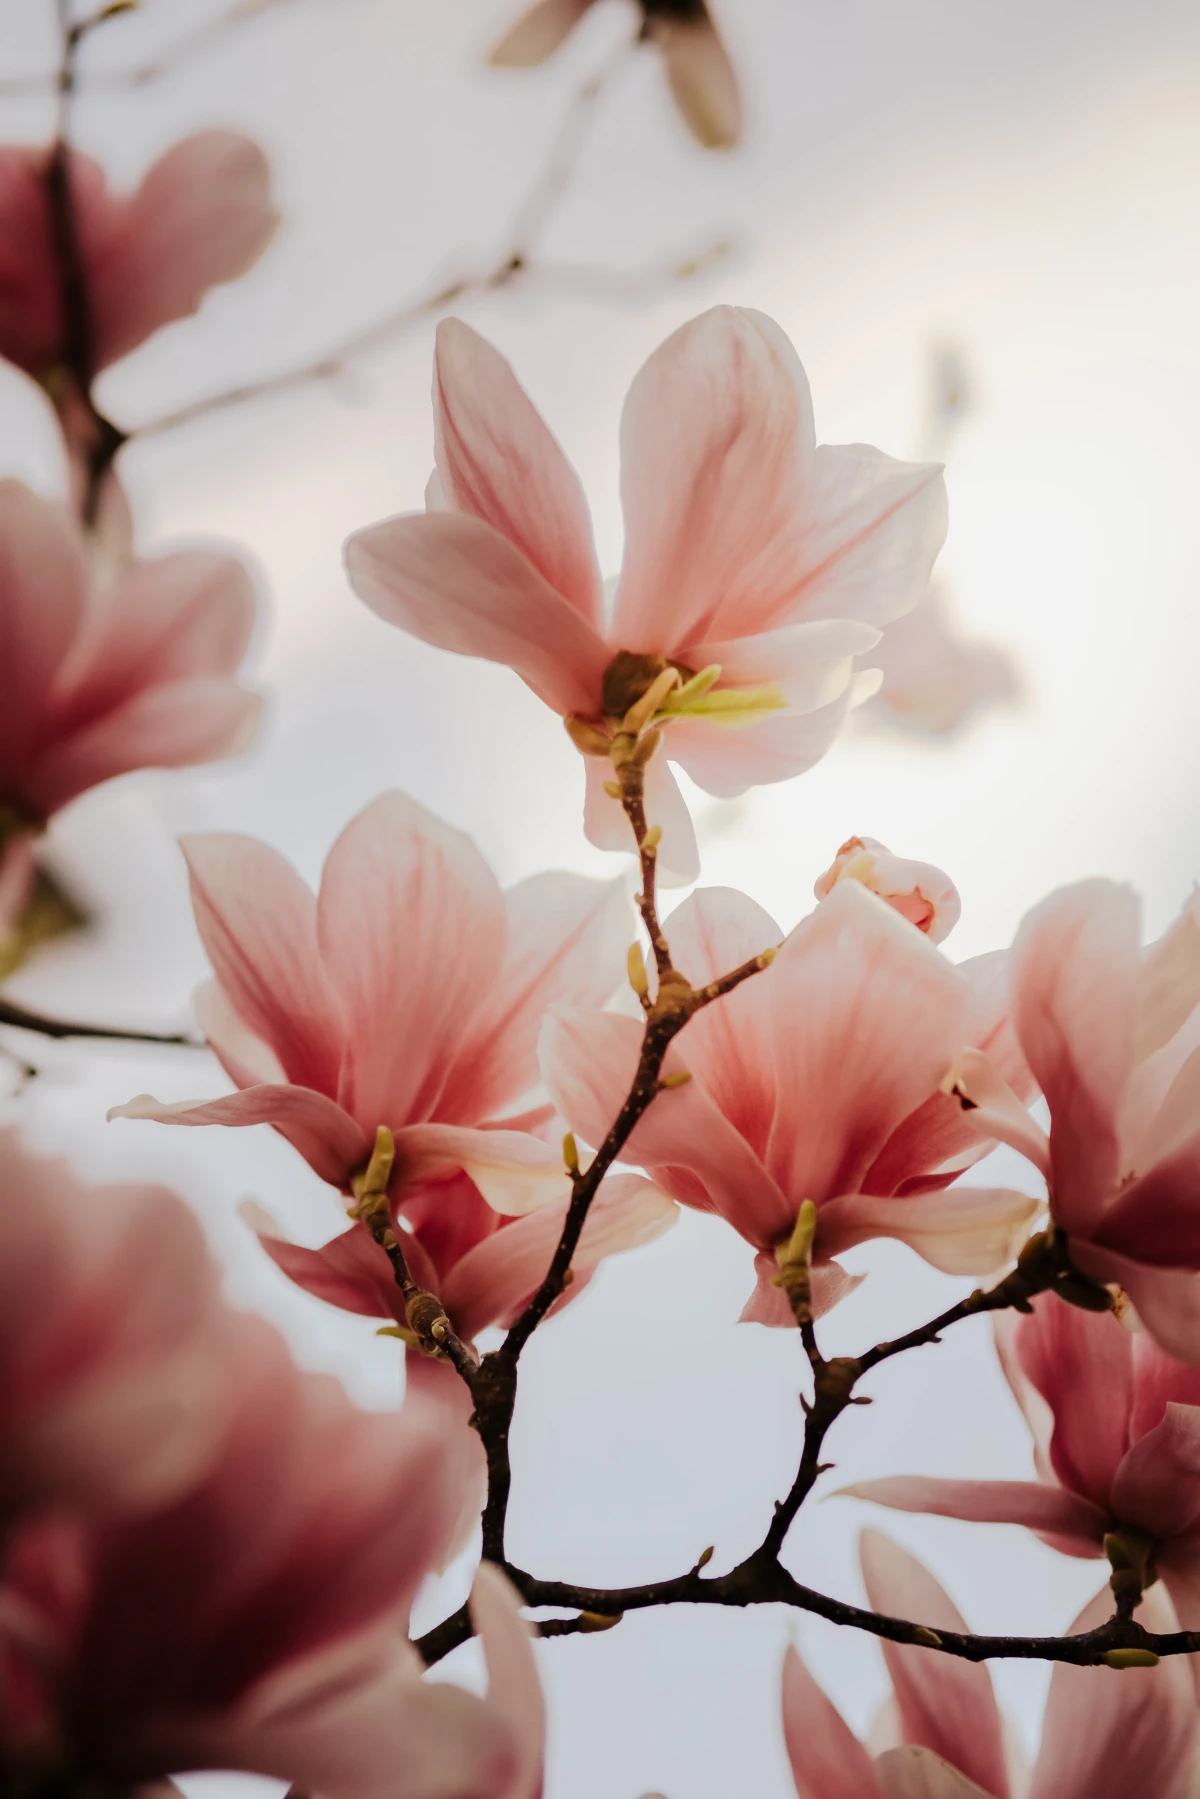 magnolia flowers up close